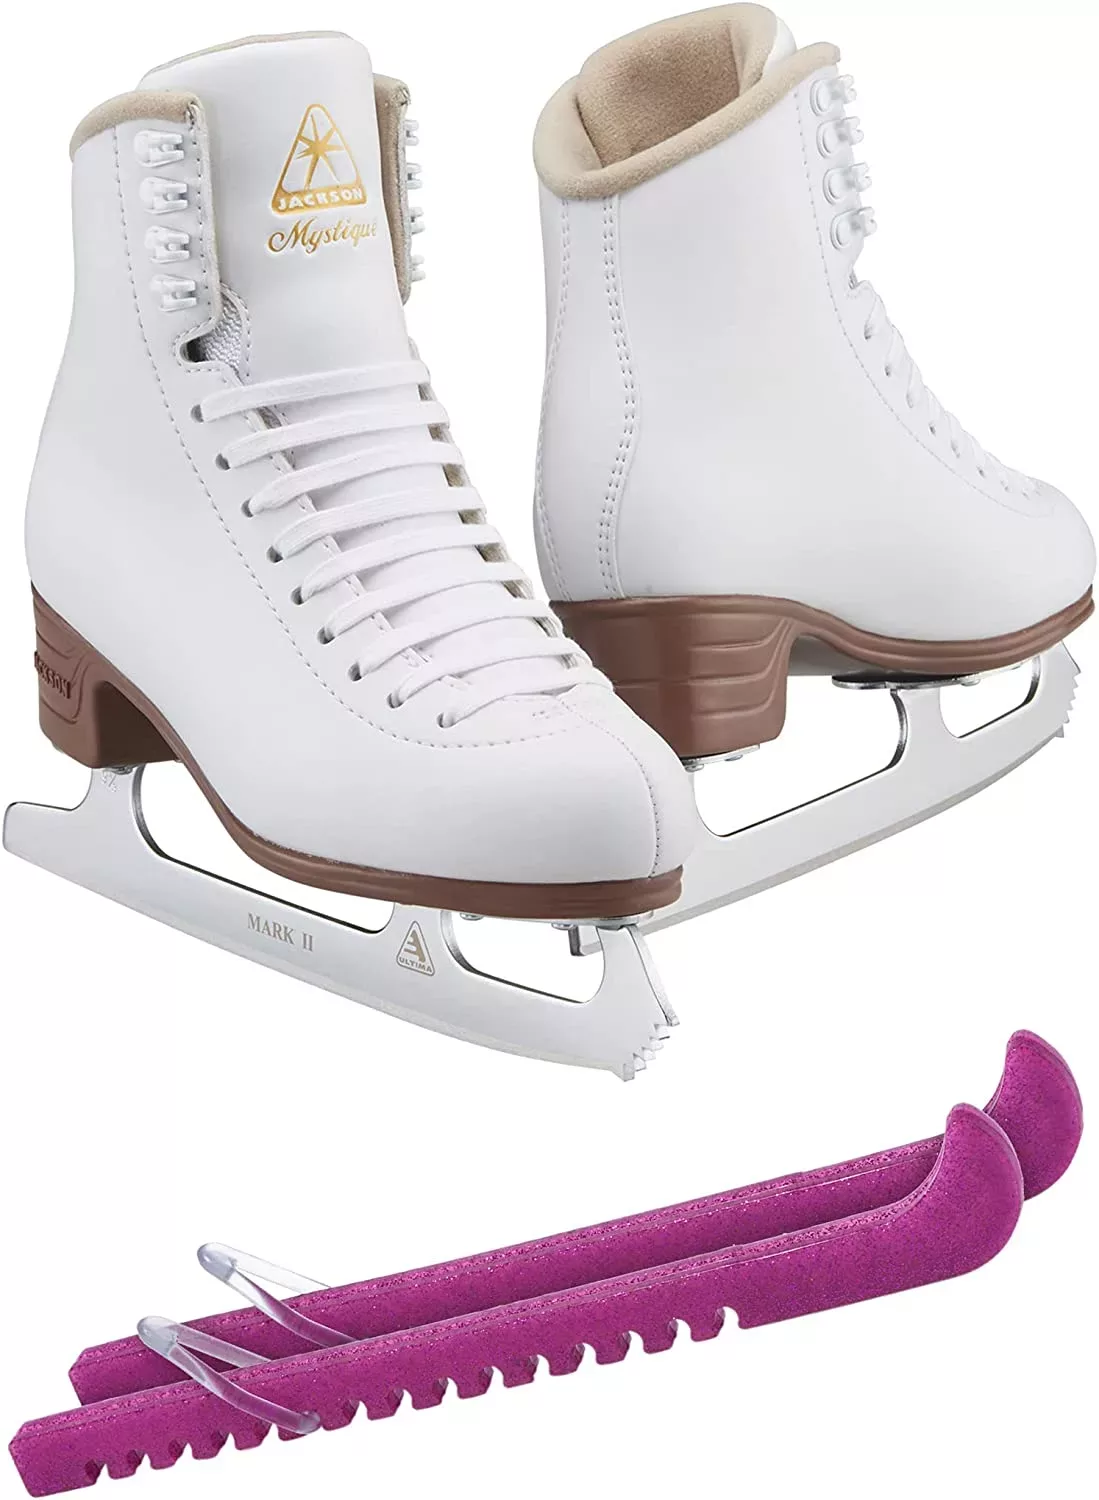 SKATE GURU Jackson Ultima Patins à glace MYSTIQUE JS1490 Bundle avec protections de patins Guardog Liasses